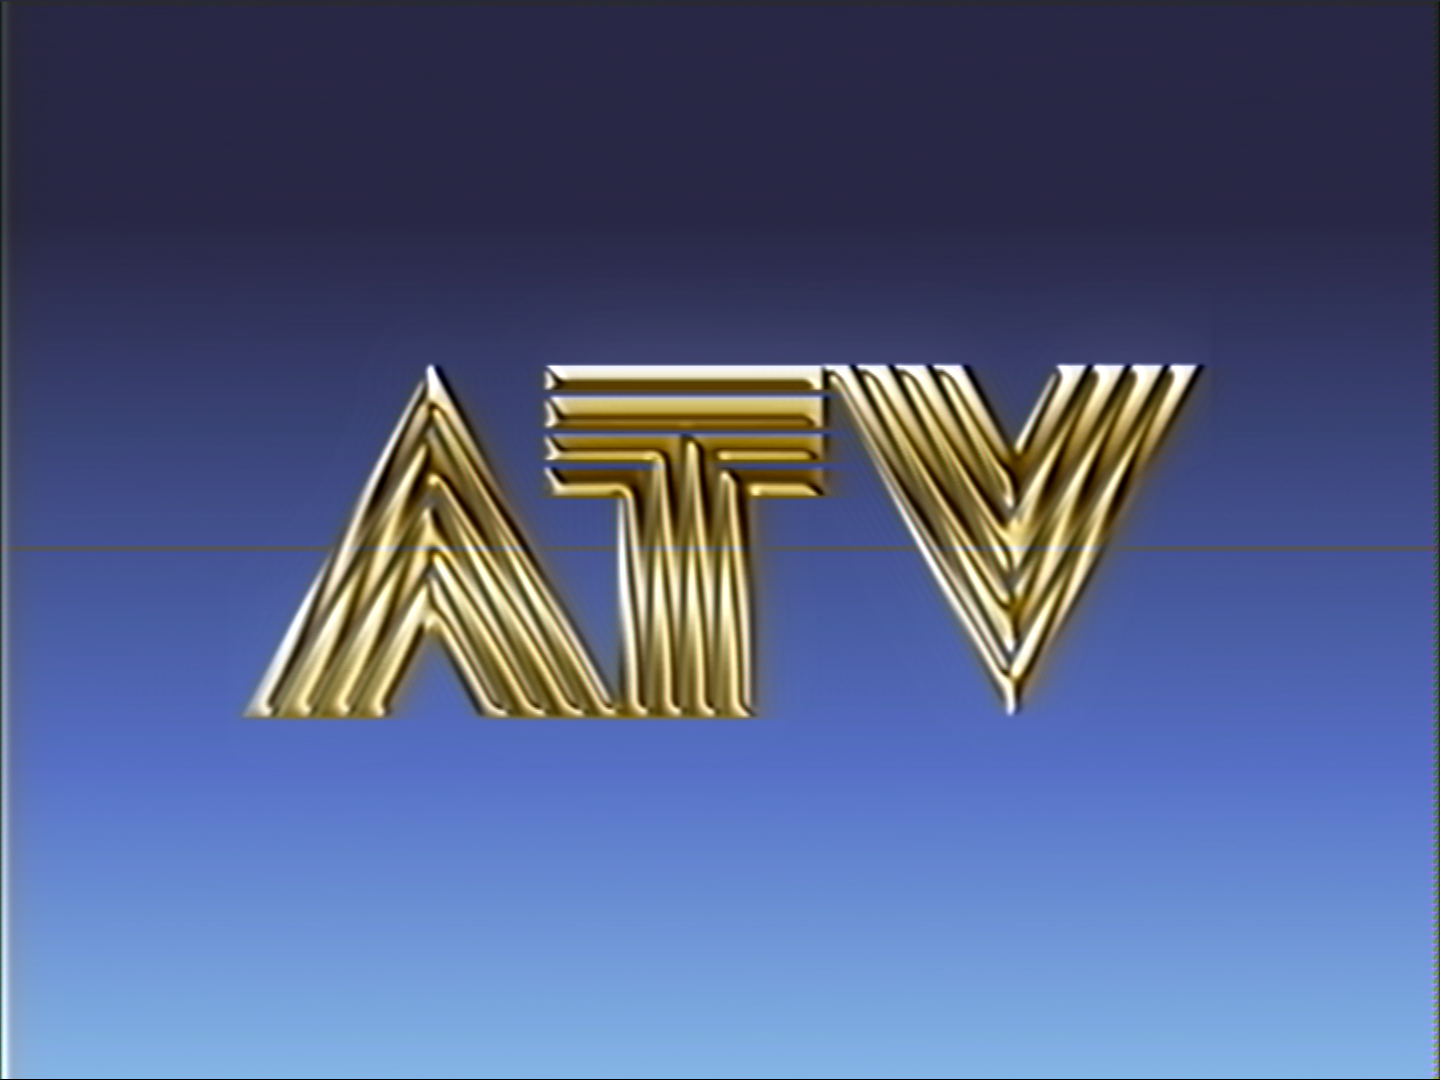 [Test Broadcast] ATV (mid-80s)